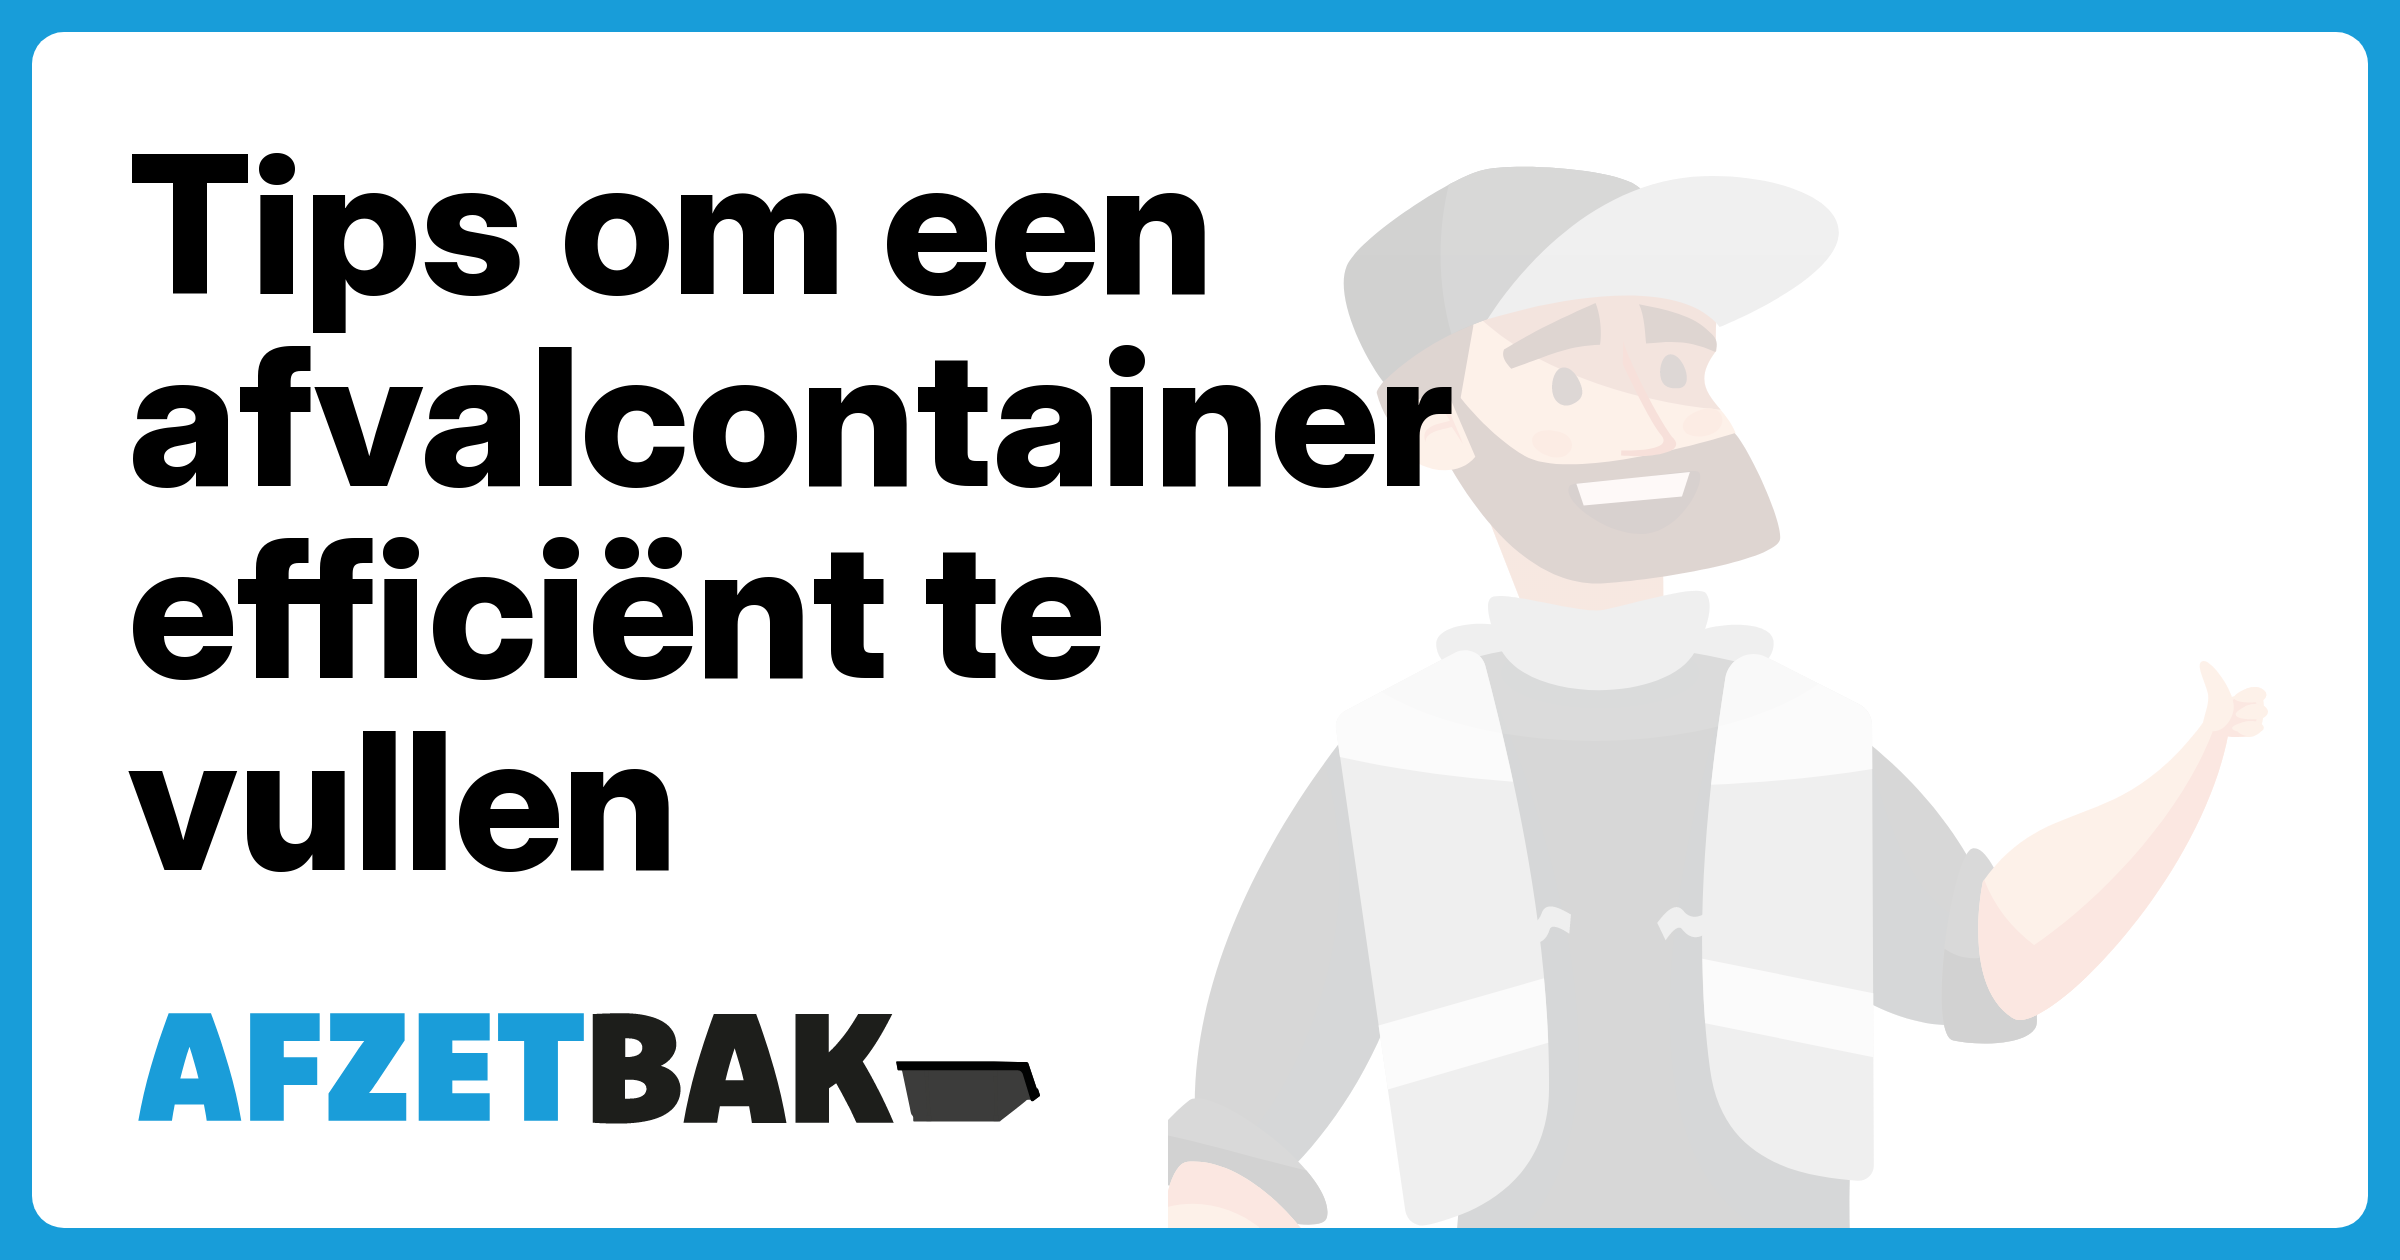 Tips om een afvalcontainer efficiënt te vullen - Afzetbak.nl